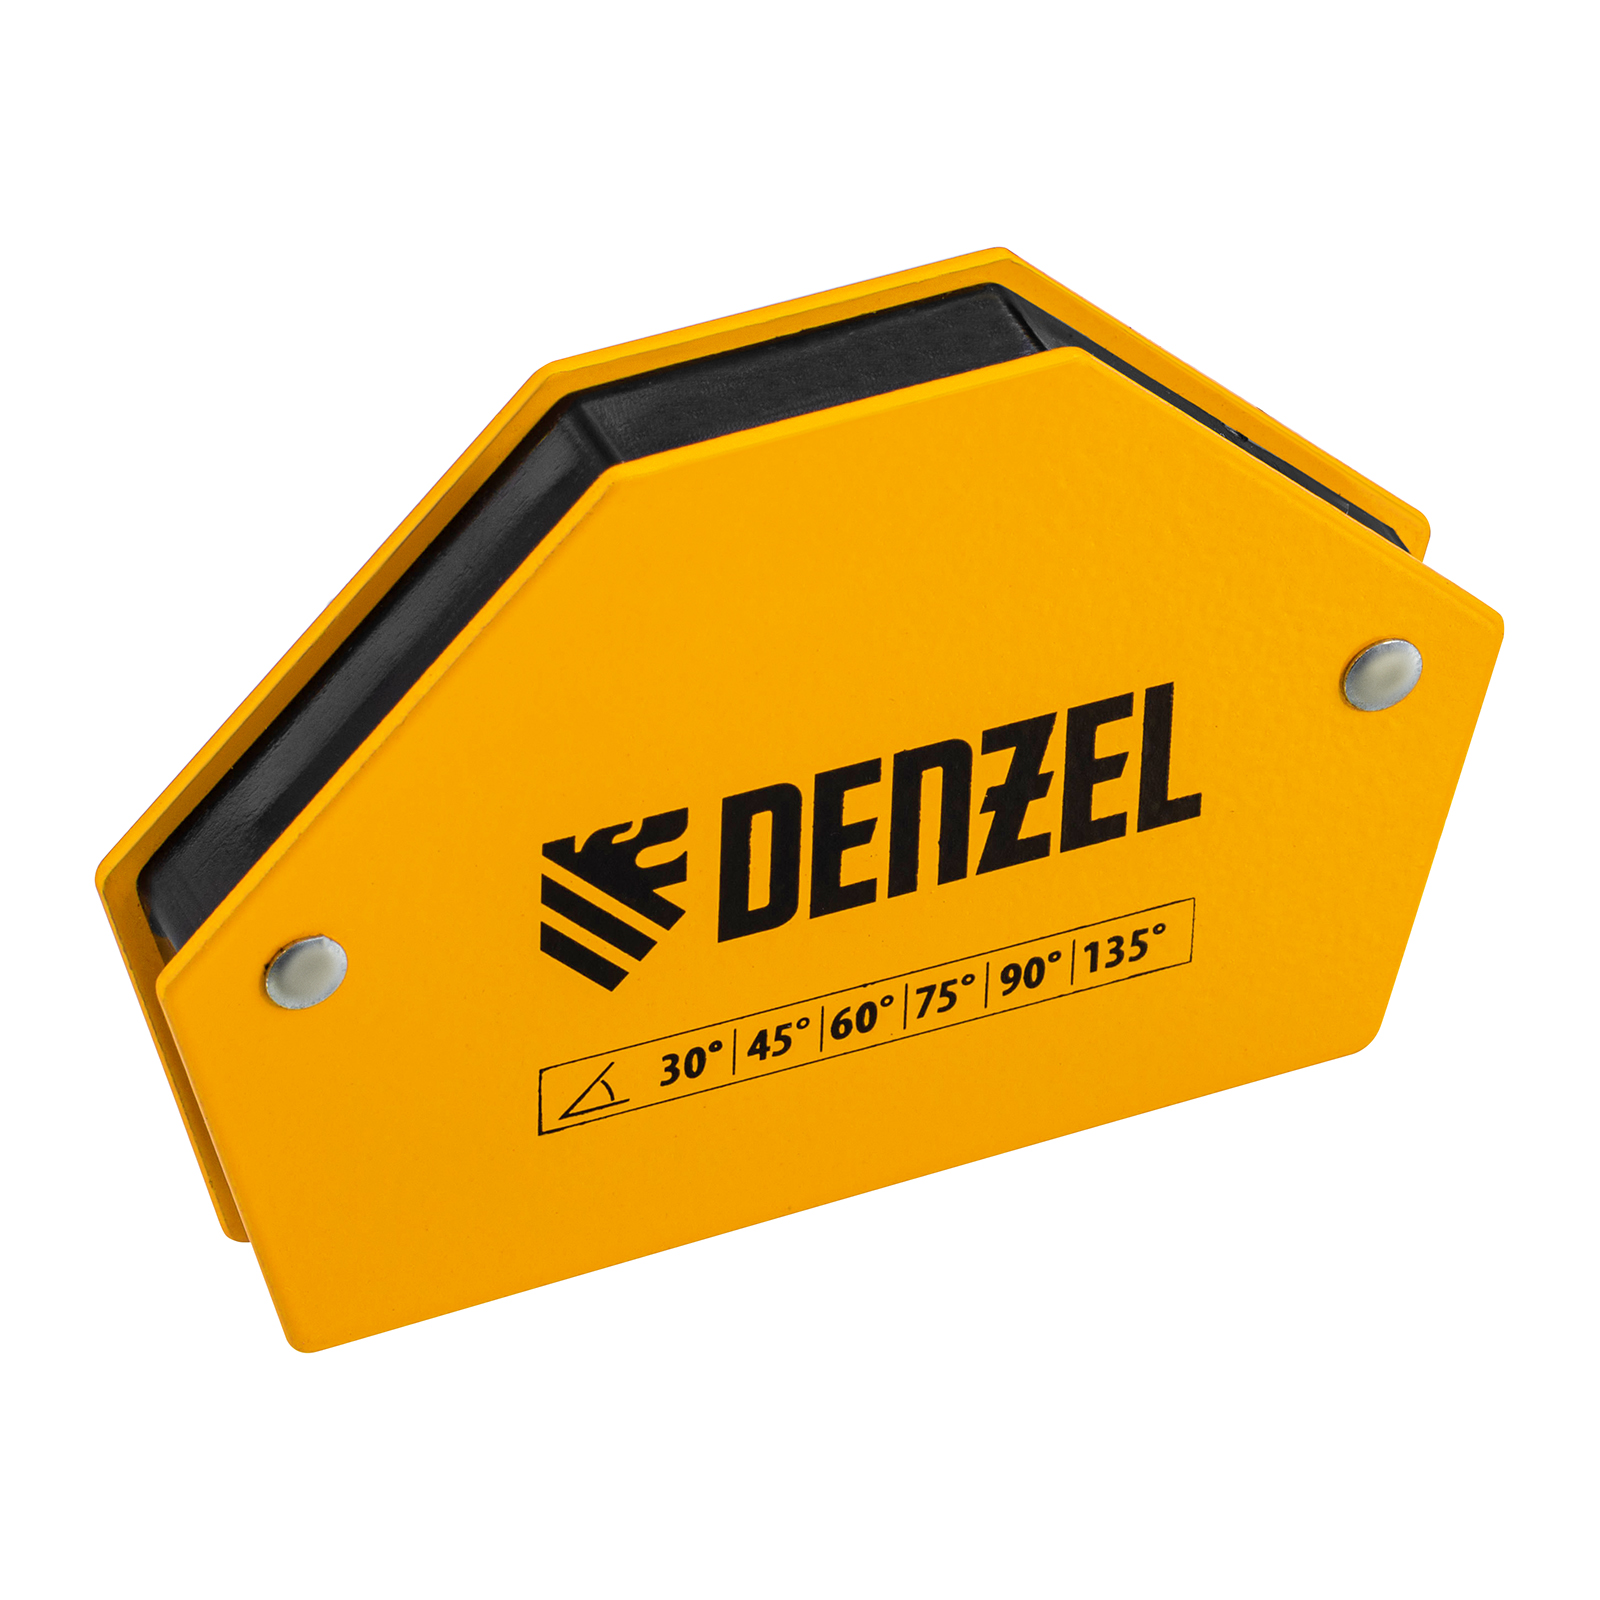 Фиксатор магнитный для сварочных работ DENZEL усилие 25 LB, 30х45х60х75х90х135 град. 97552 фиксатор магнитный регулируемый для сварочных работ denzel усилие 50 lb 97565